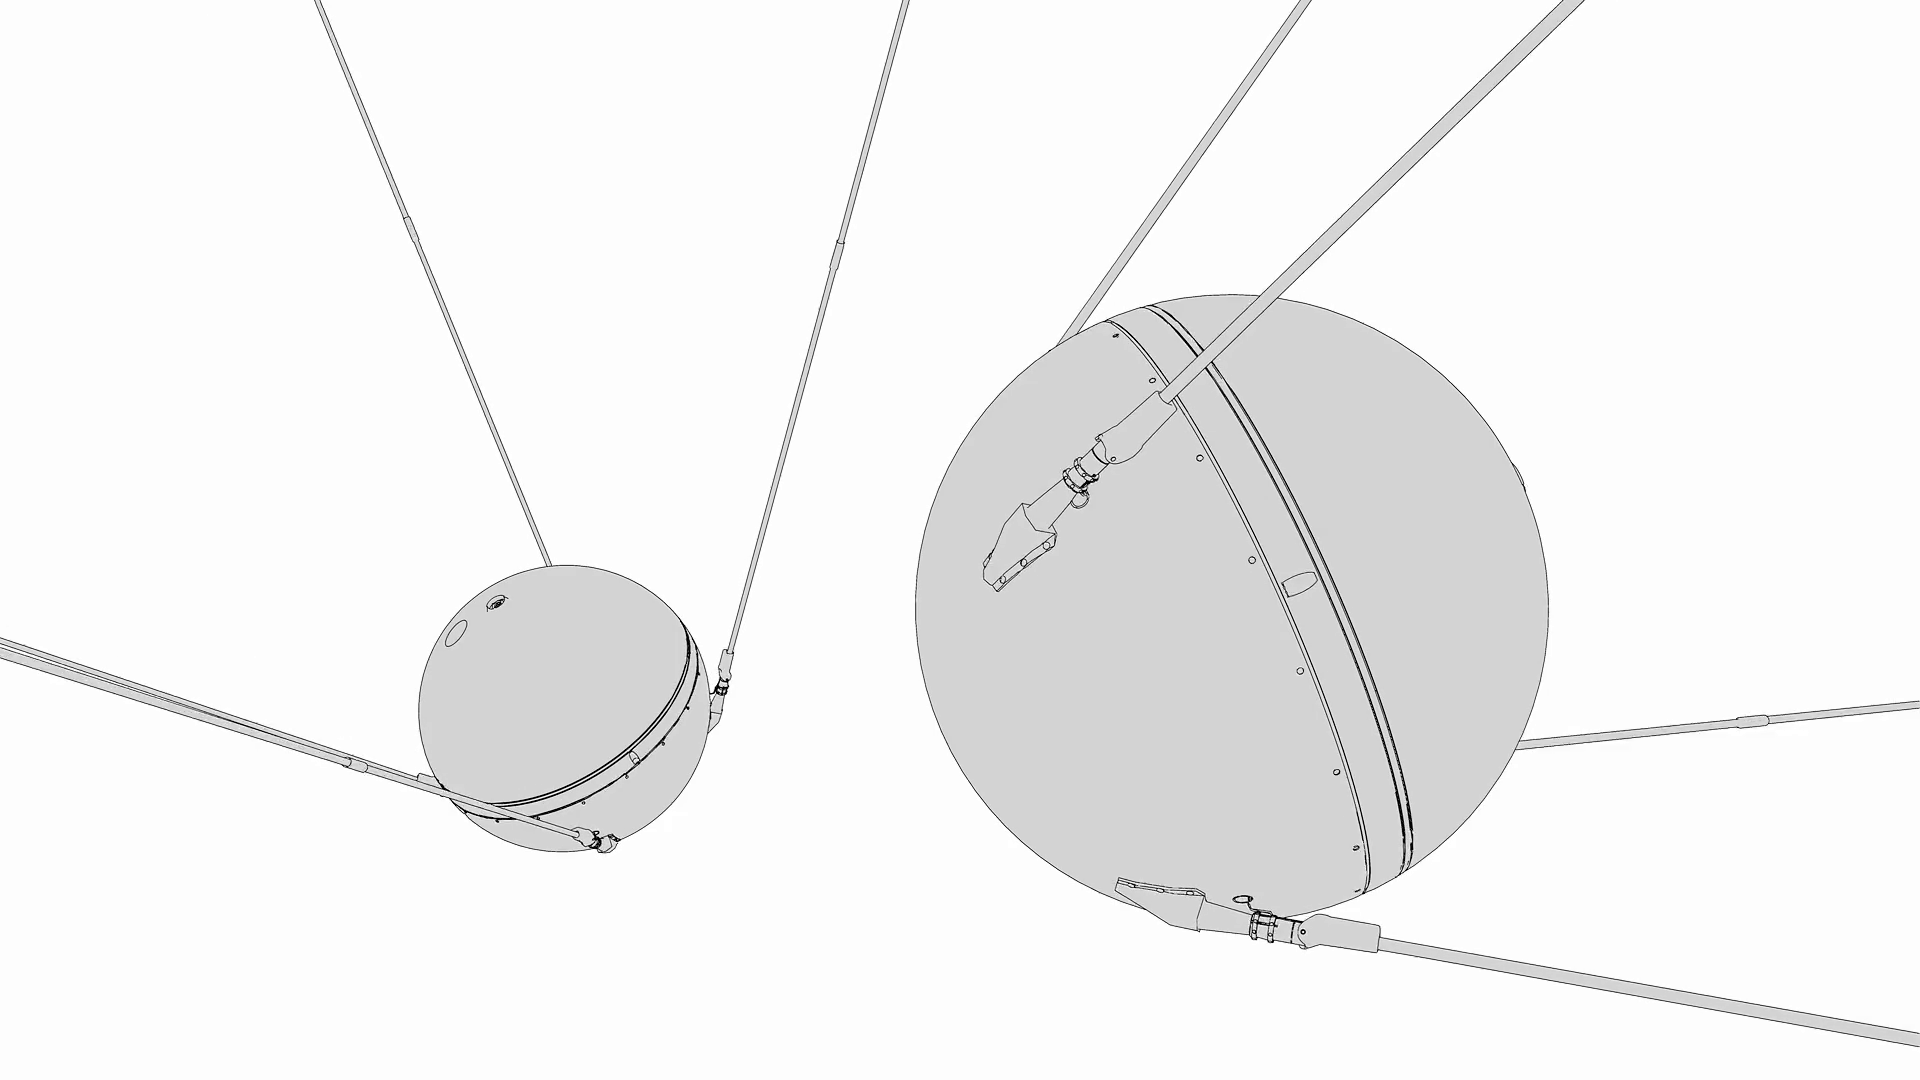 Чертеж ИСЗ Спутник 1. Спутник ПС-1 чертежи. ПС-1 Спутник строение.